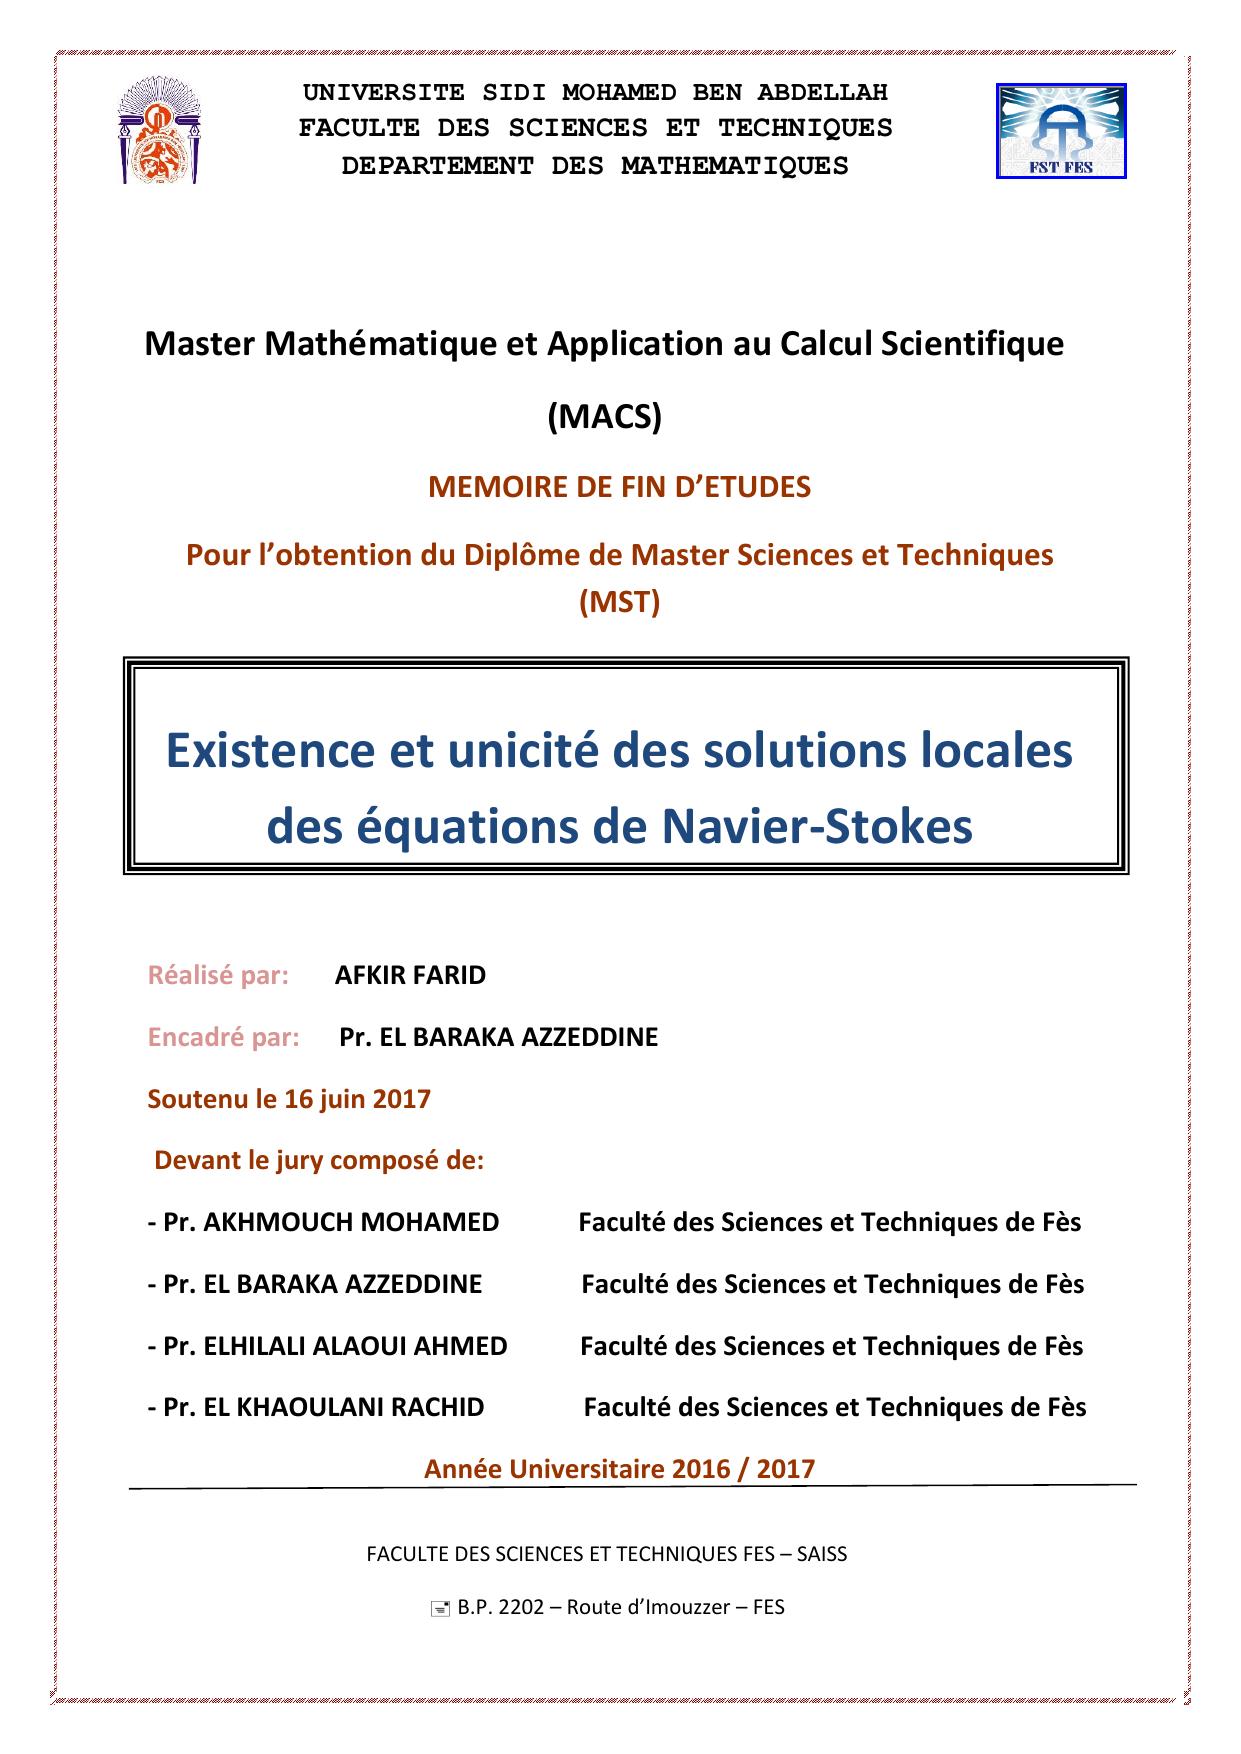 Existence et unicité des solutions locales des équations de Navier-Stokes